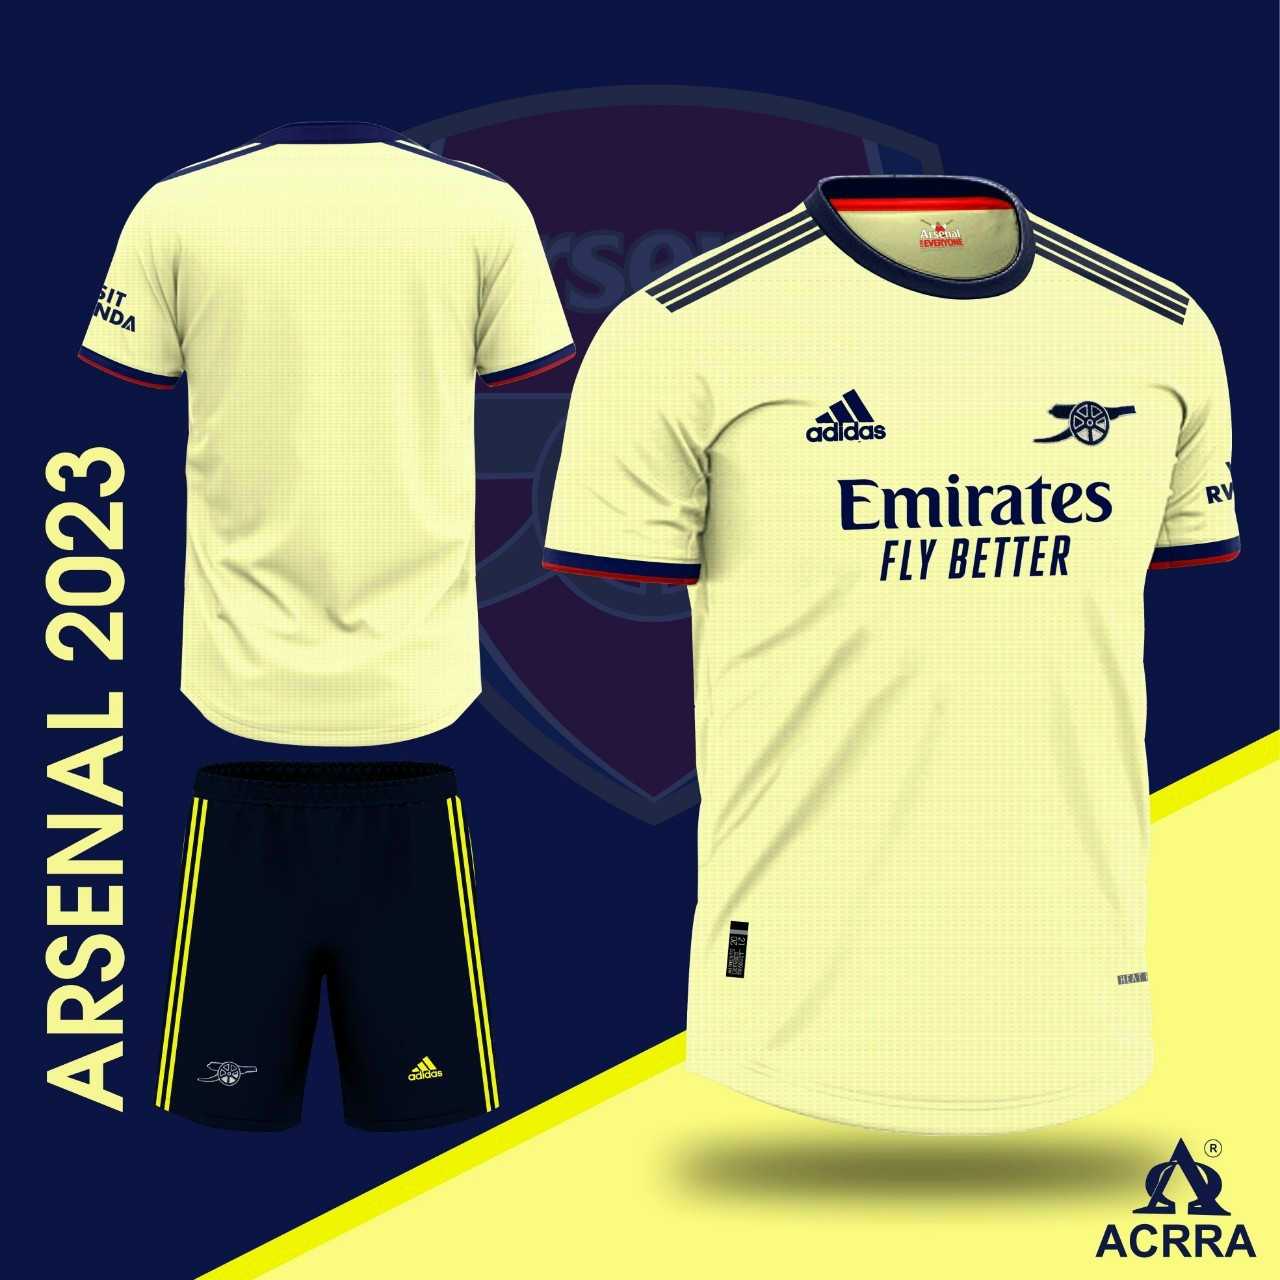 Bộ quần áo đá banh câu lạc bộ bóng đá Arsenal vàng cổ tròn quần đen vải gai mịn thái